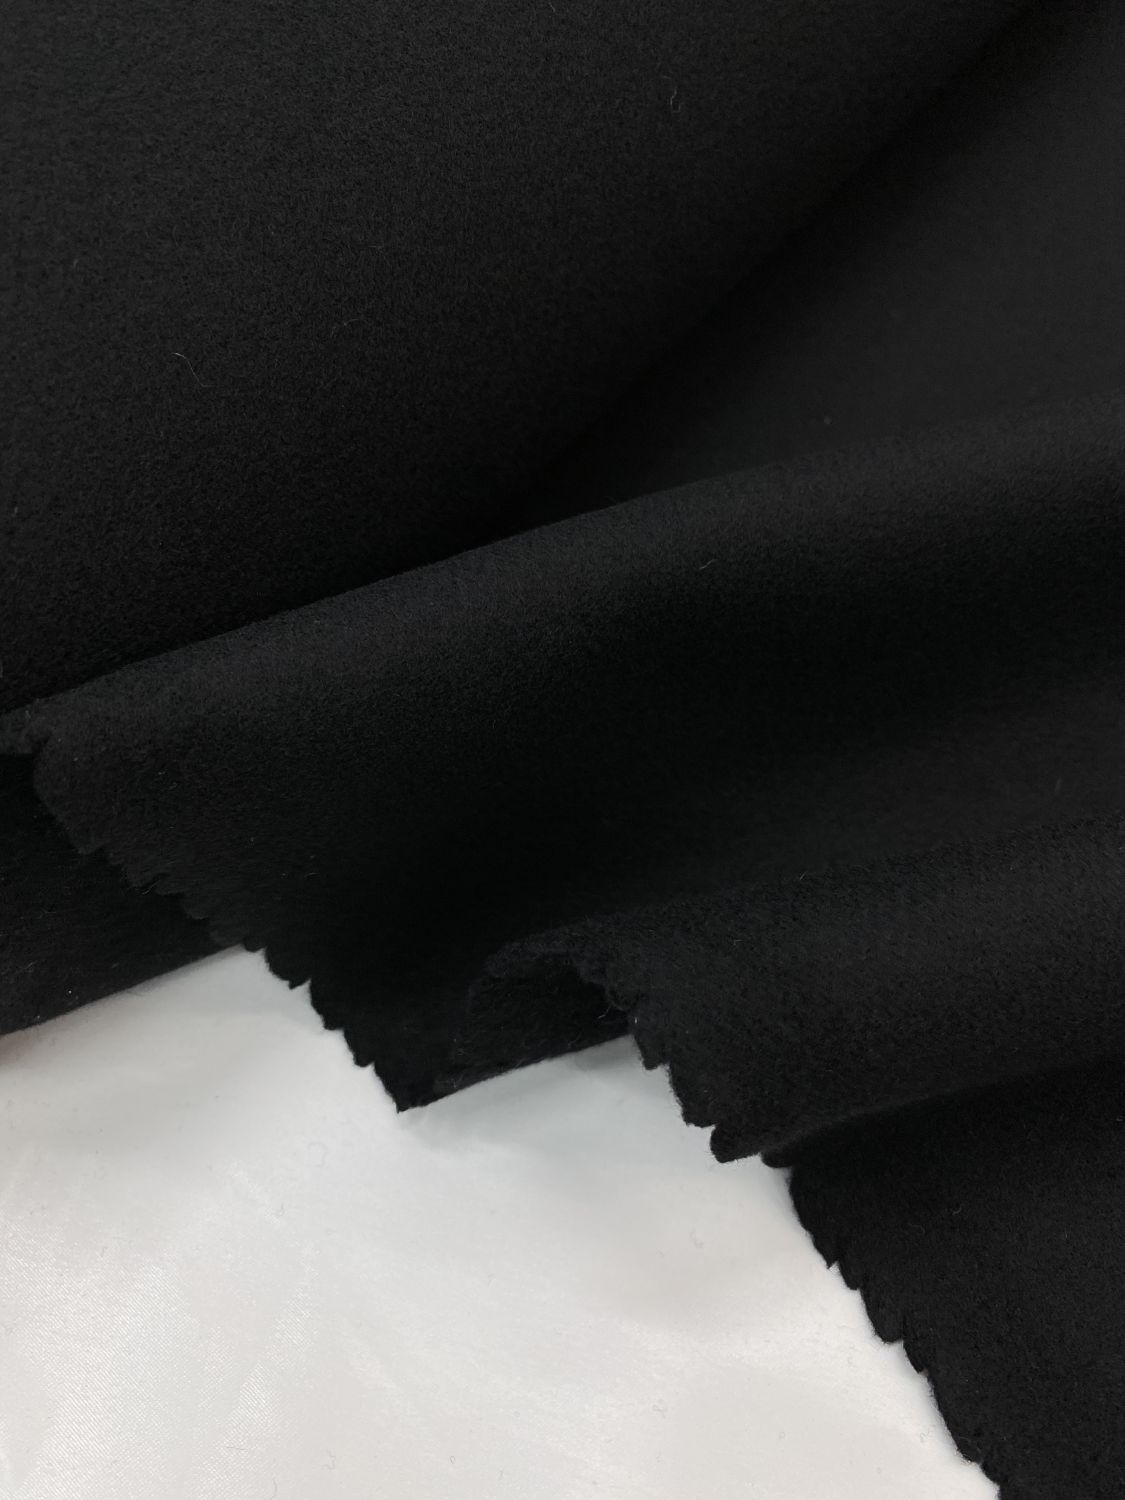 Ткань шерсть чёрного цвета дабл плотностью 600г/м